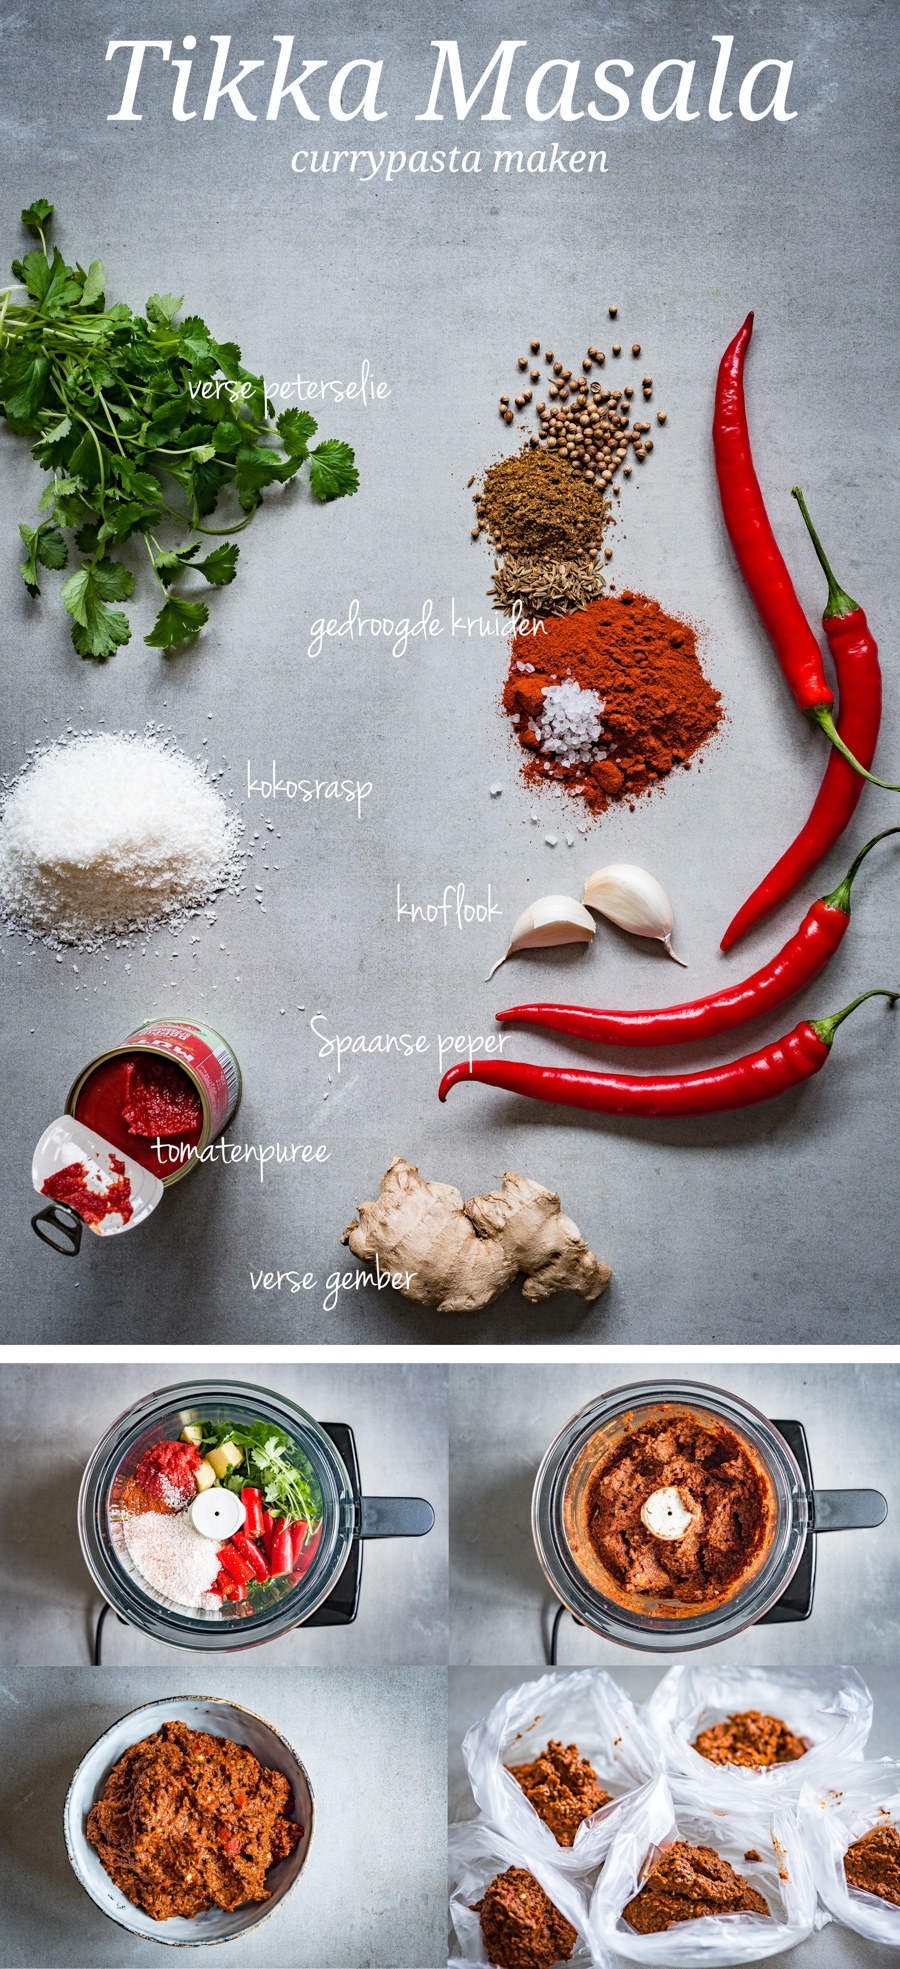 Afbeelding voor Pinterest van de ingrediënten voor de tikka masala currypasta.